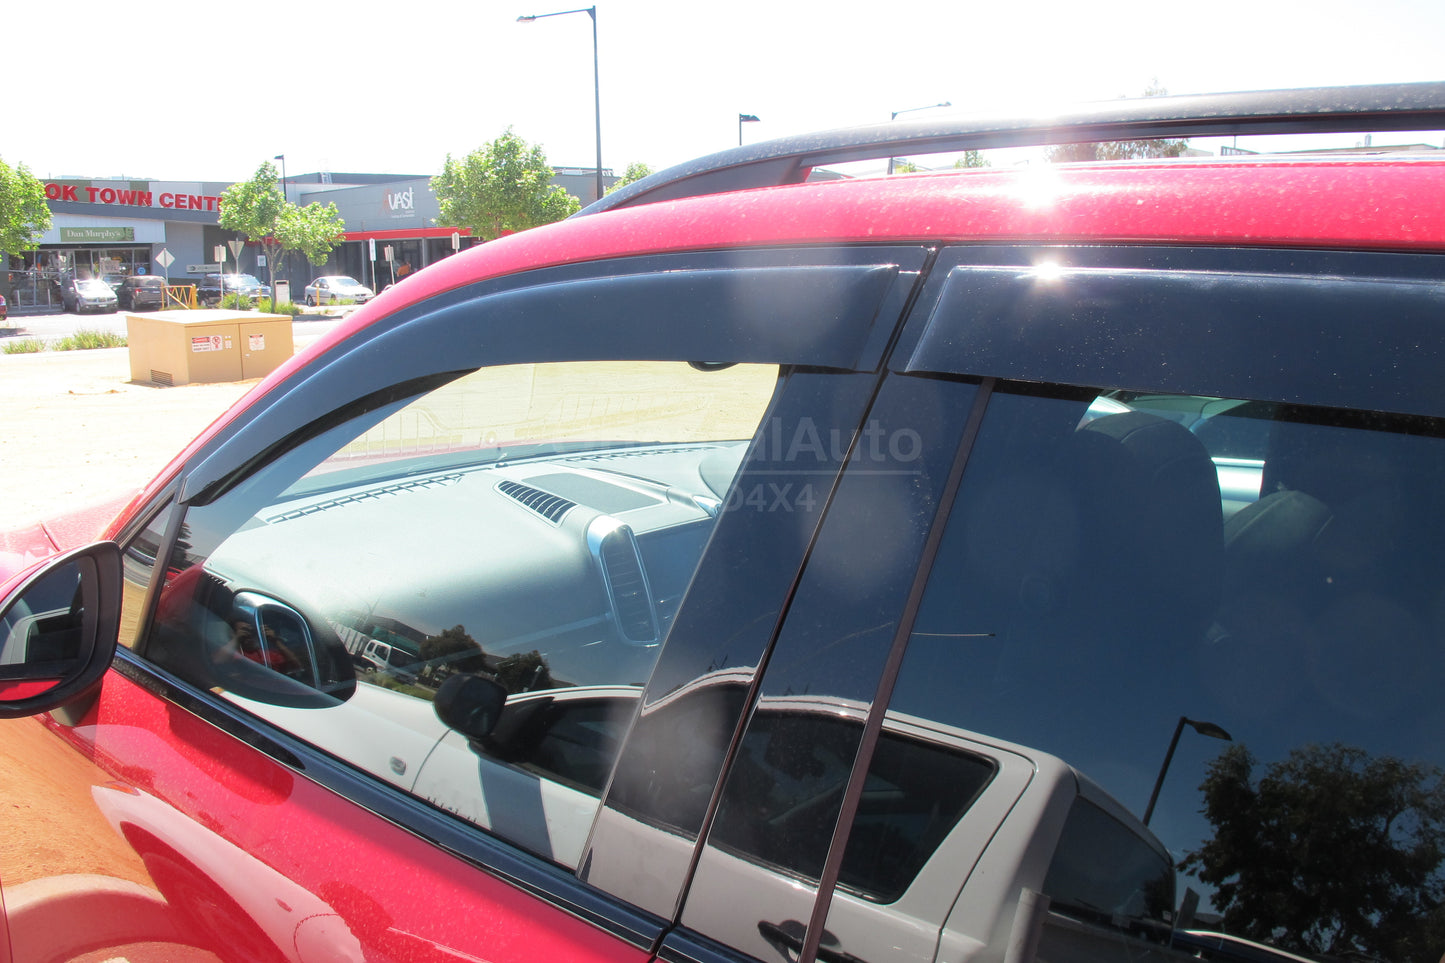 Premium Weathershields For Porsche Cayenne 2010+ Weather Shields Window Visor